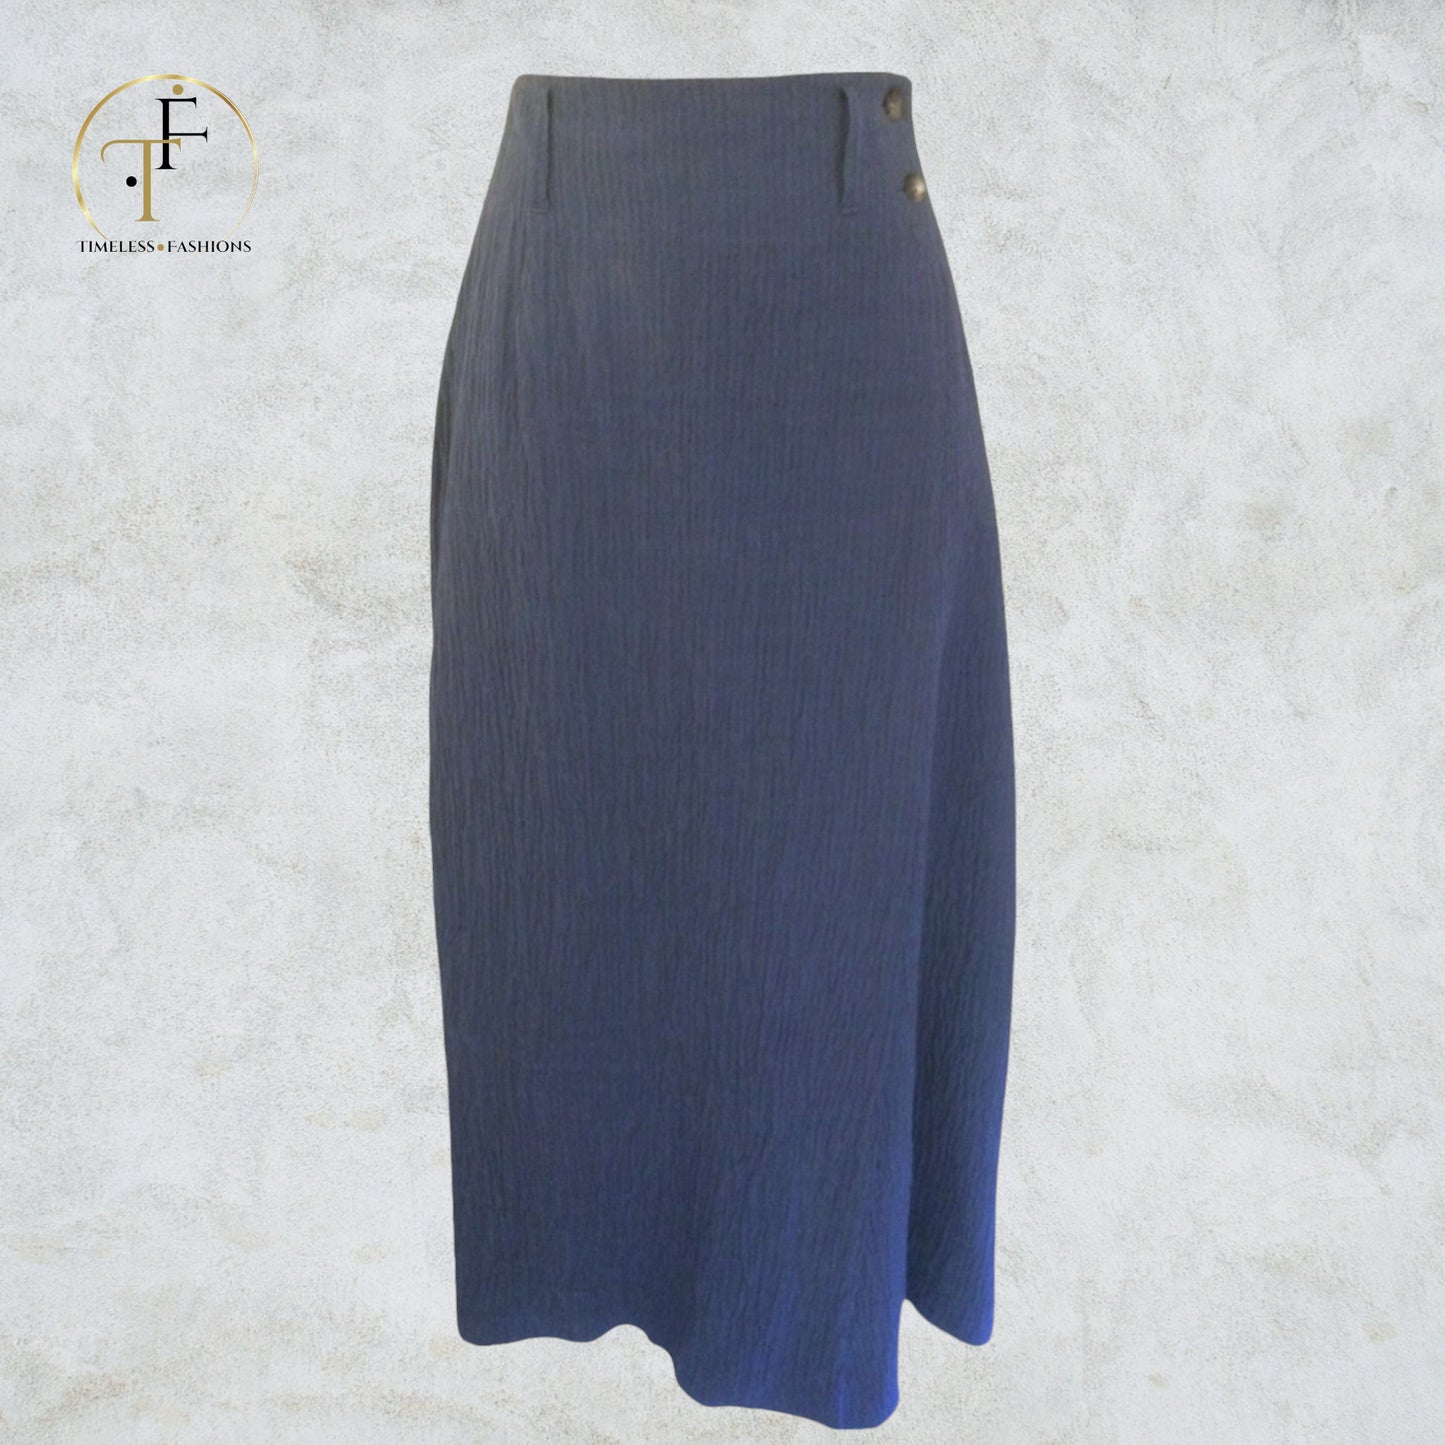 Mulberry Blue Long Textured Wrap Linen & Cotton Skirt UK 10 US 6 EU 38 Timeless Fashions